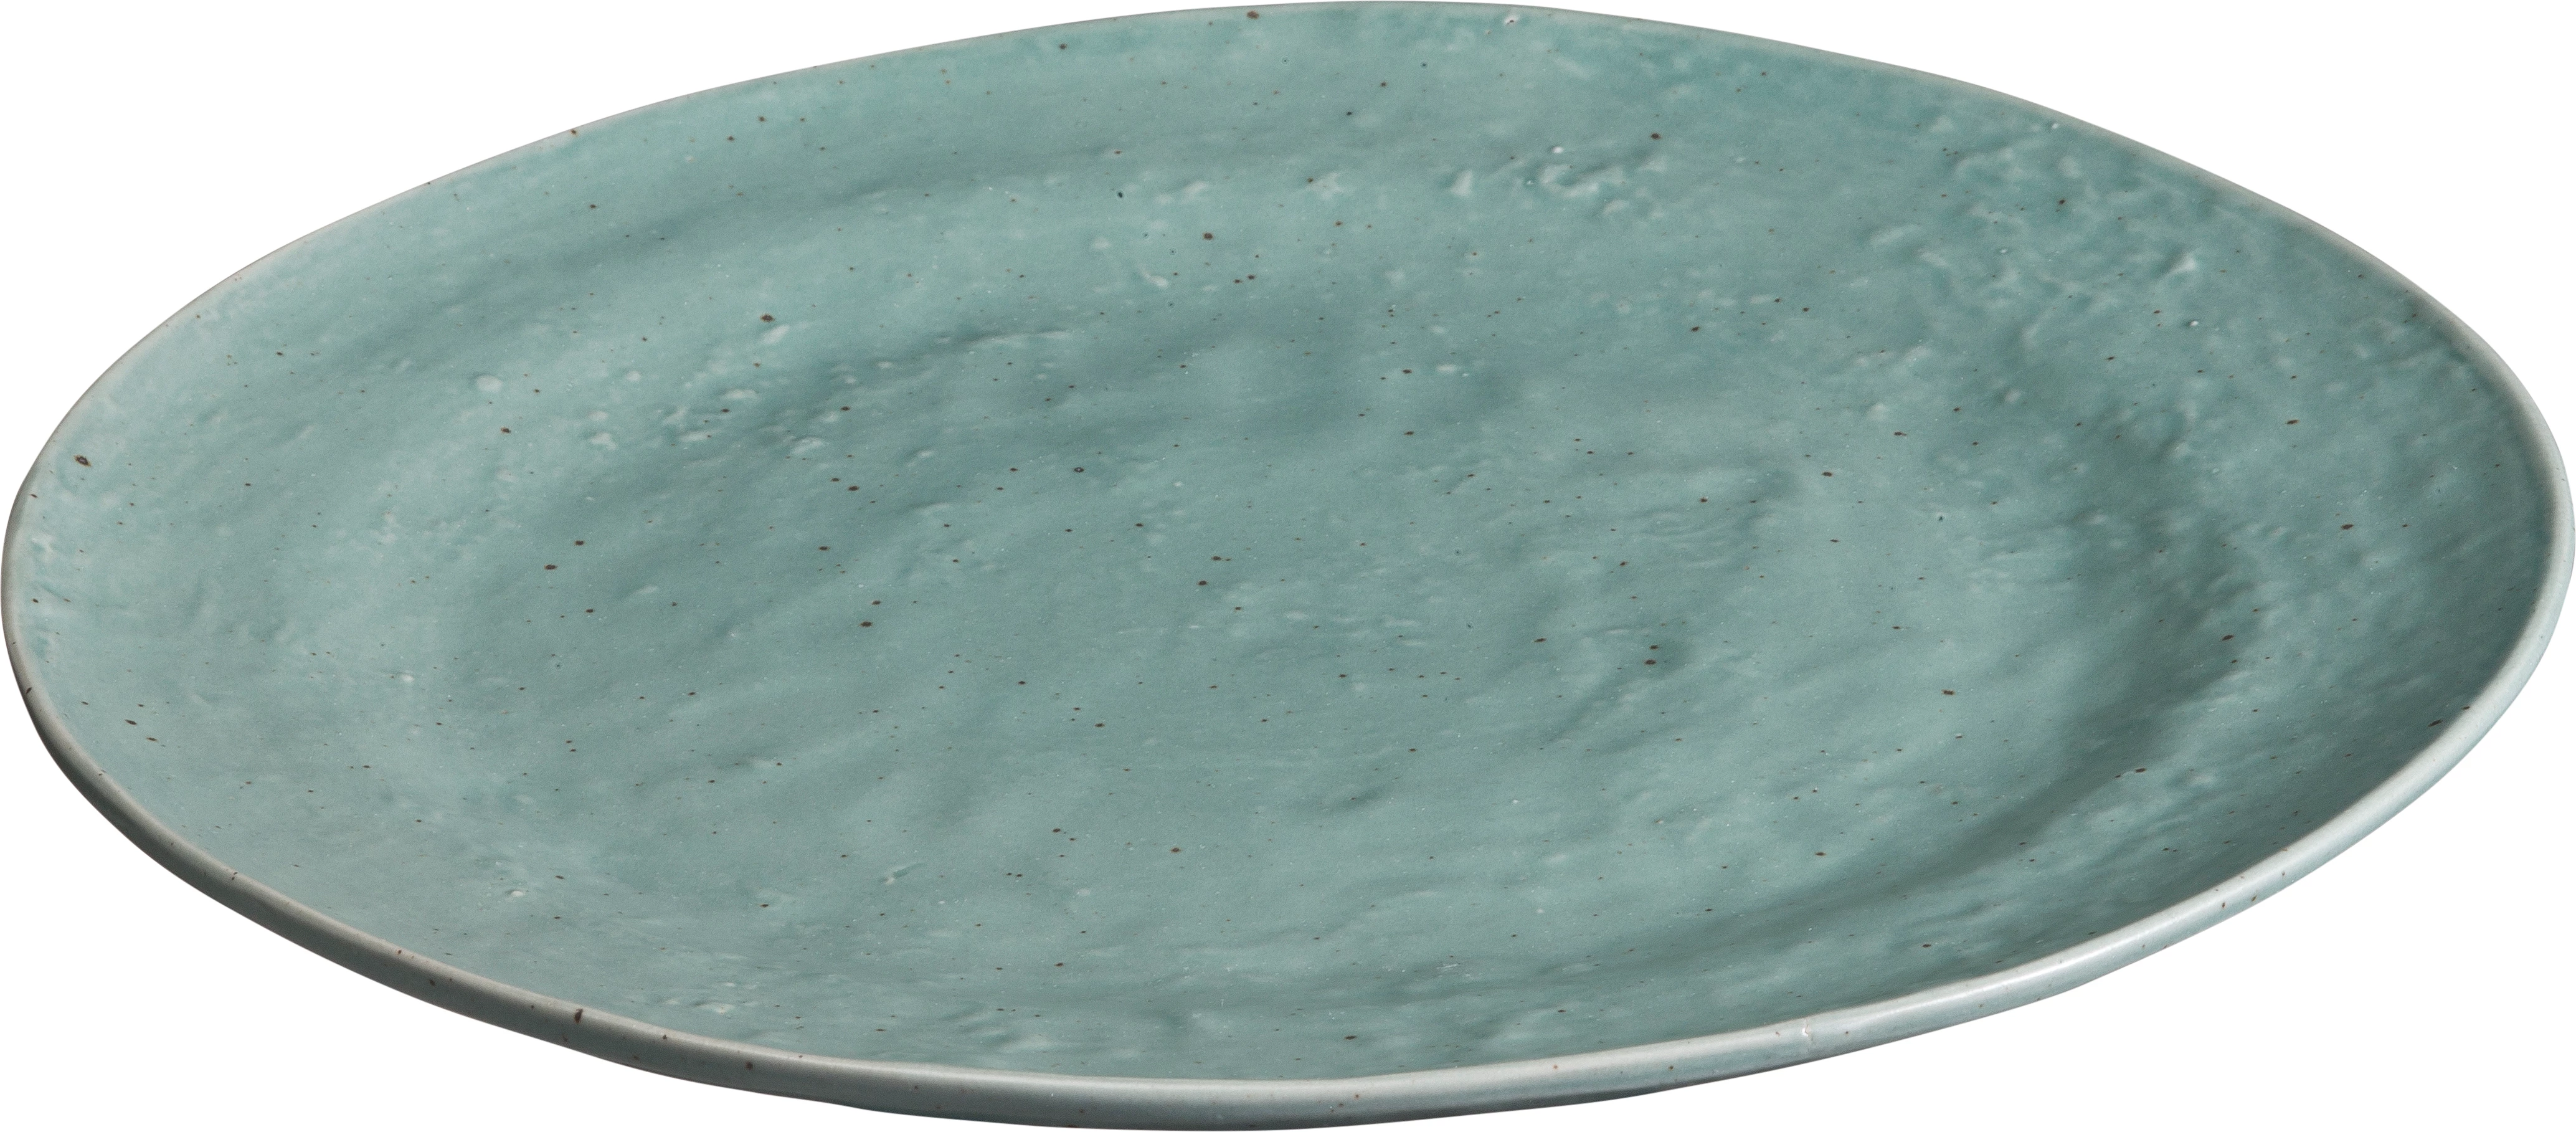 Leafs tallerken uden fane, grøn, ø27,5 cm